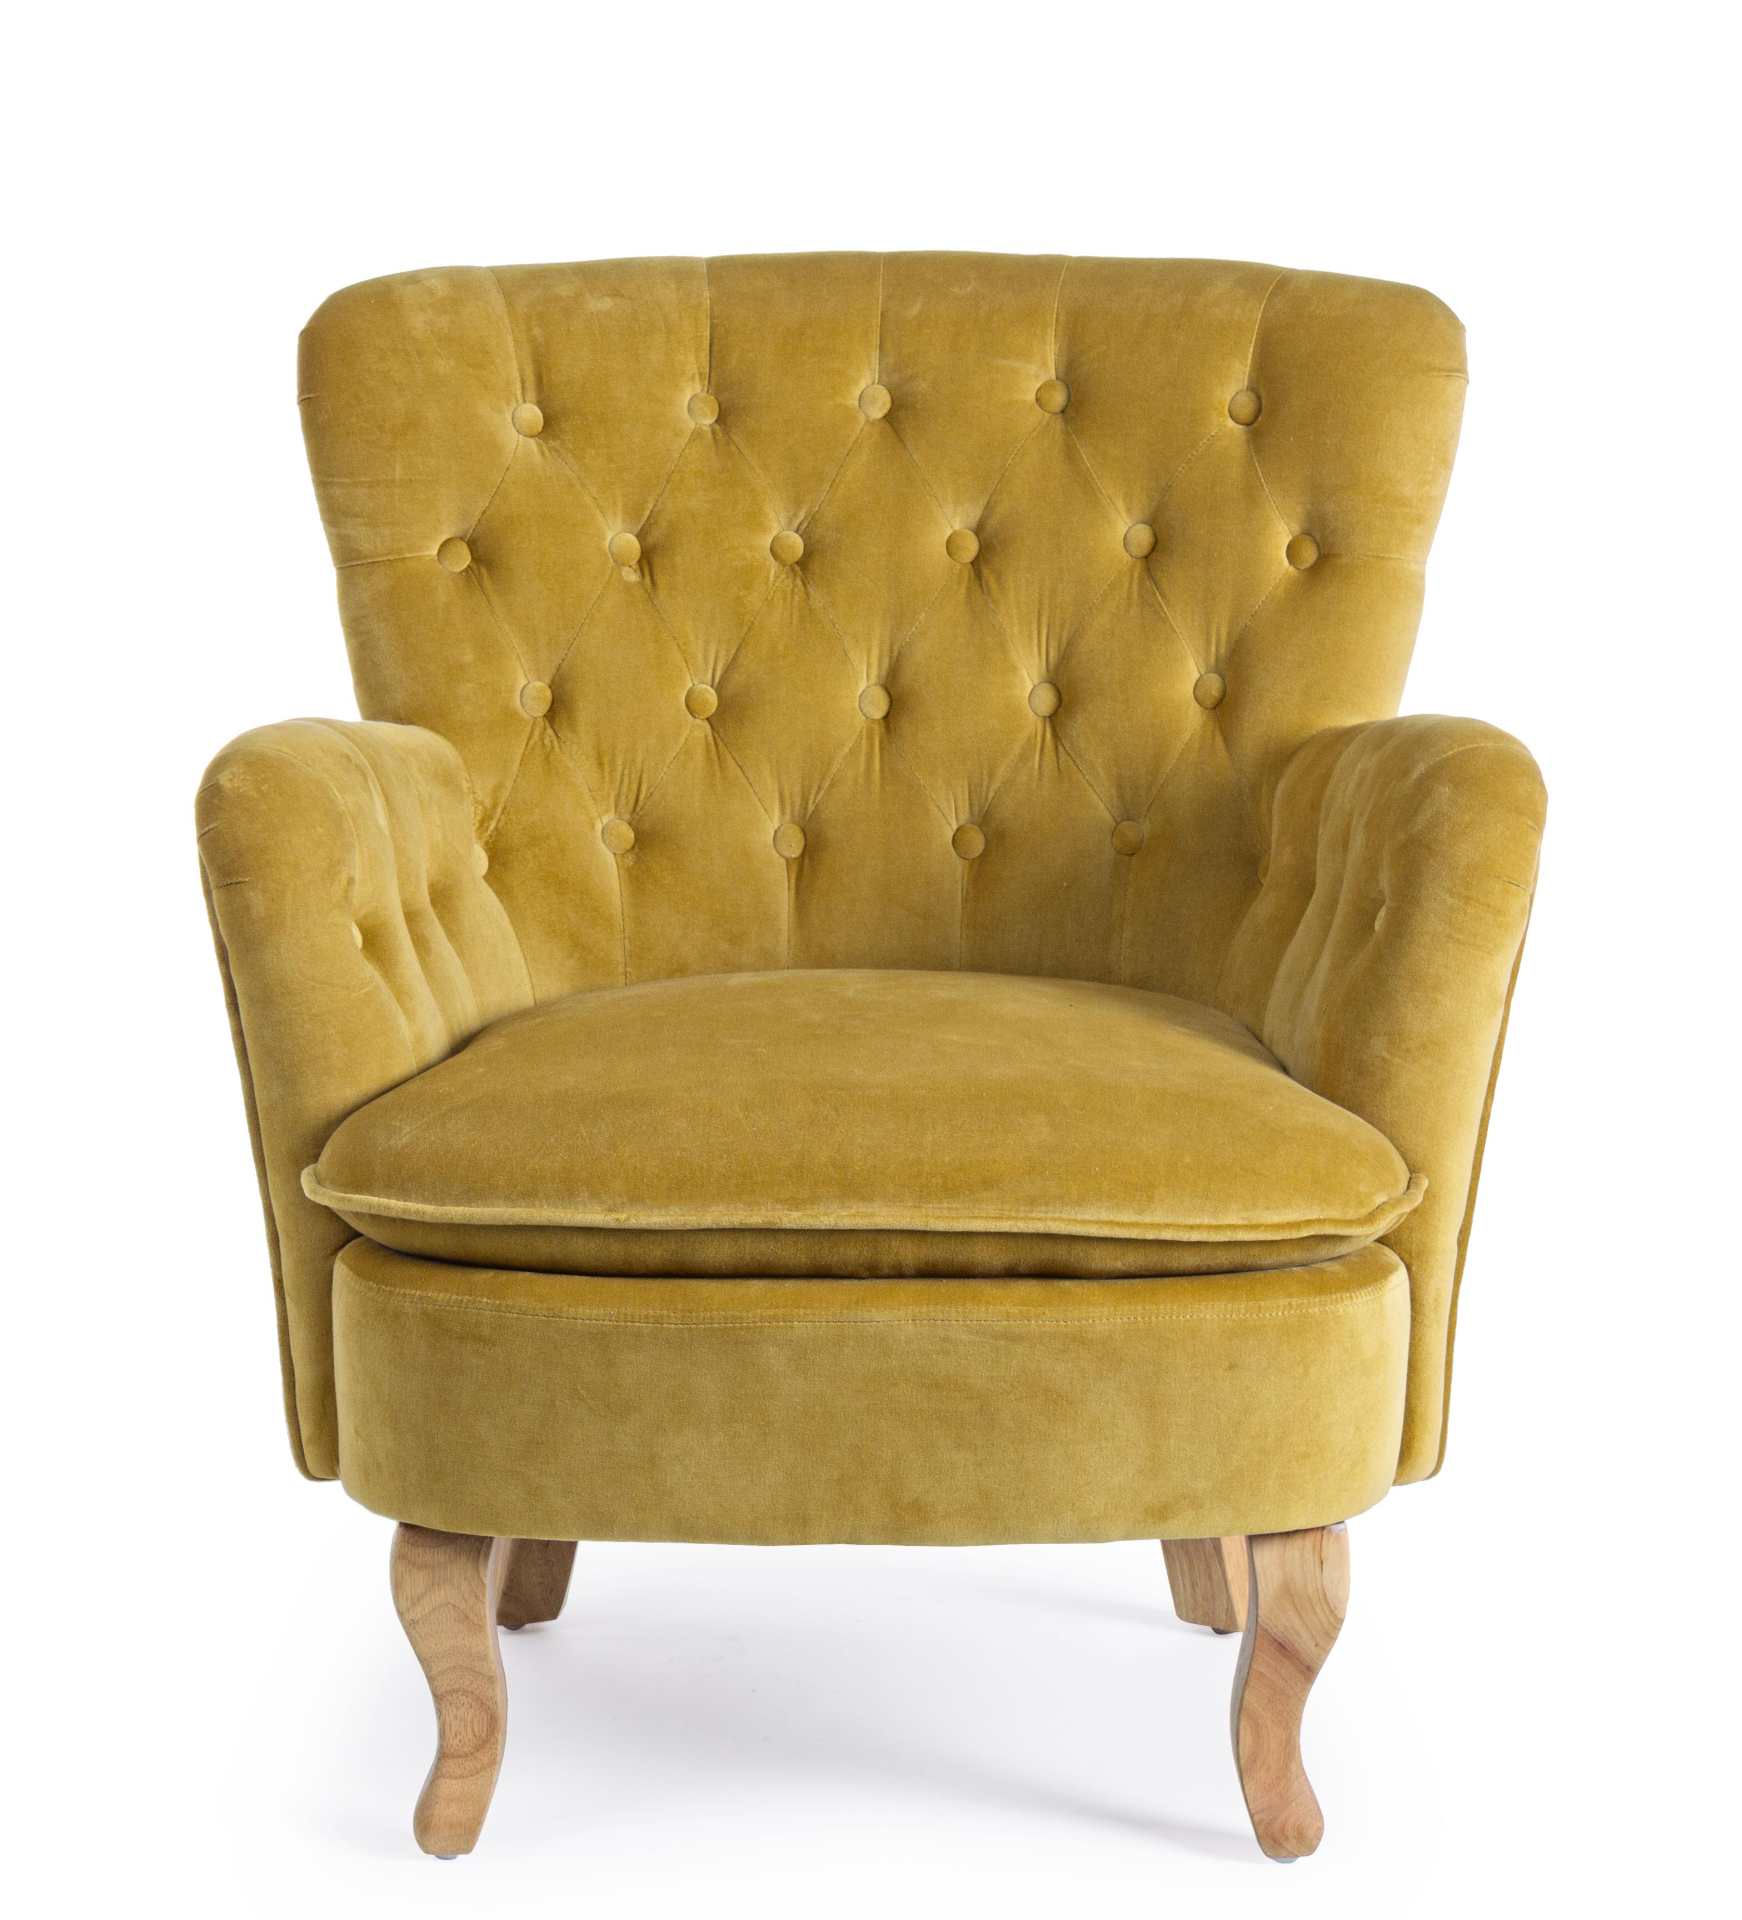 Der Sessel Orlins überzeugt mit seinem klassischen Design. Gefertigt wurde er aus Stoff in Samt-Optik, welcher einen gelben Farbton besitzt. Das Gestell ist aus Kiefernholz und hat eine natürliche Farbe. Der Sessel besitzt eine Sitzhöhe von 44 cm. Die Bre